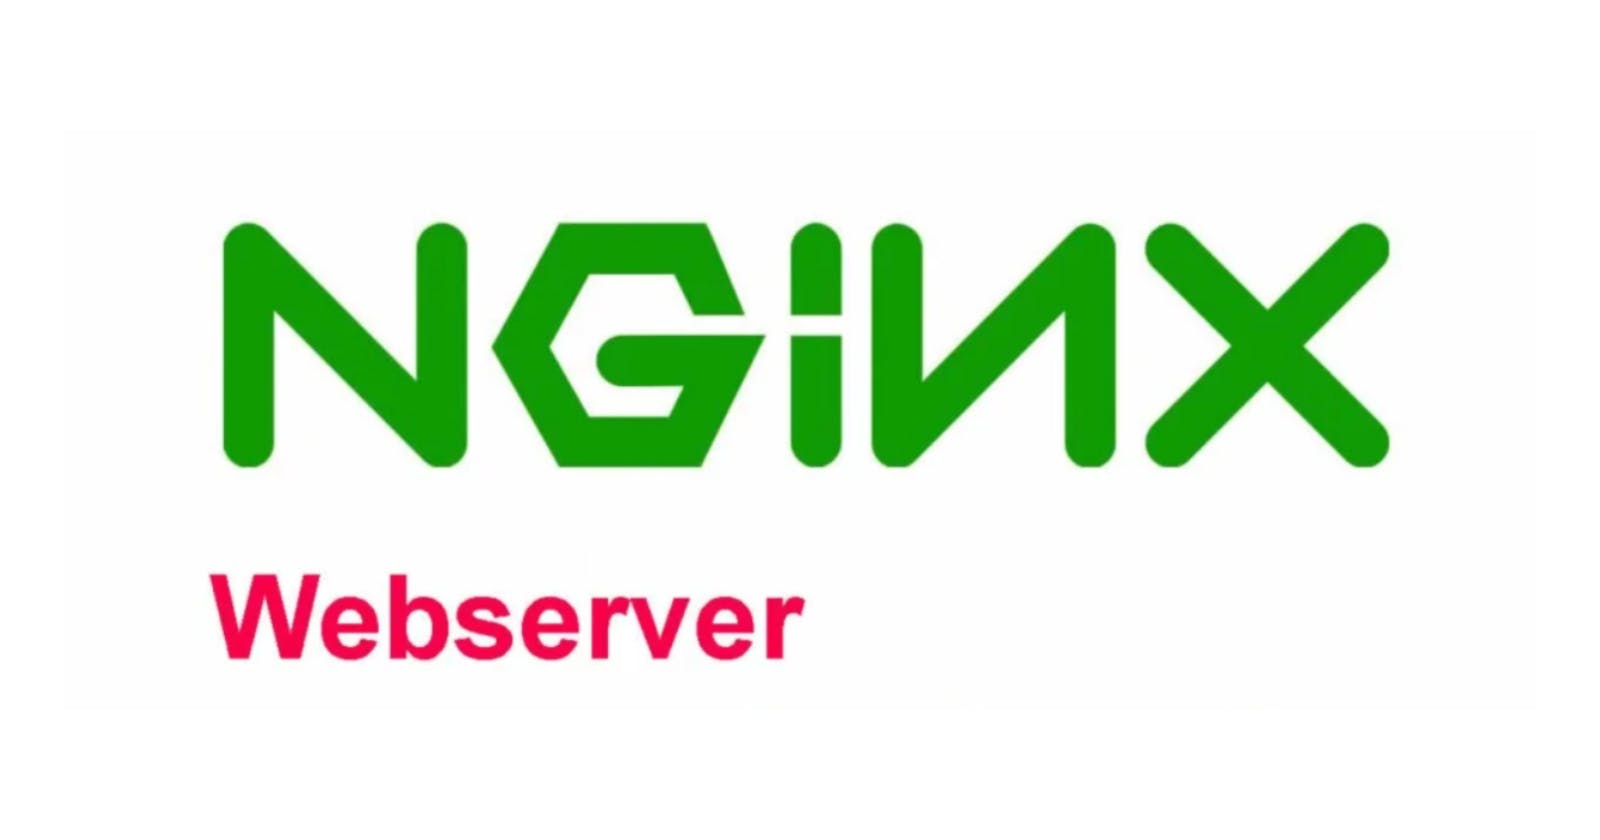 Configuring Nginx as Web server on AWS EC2